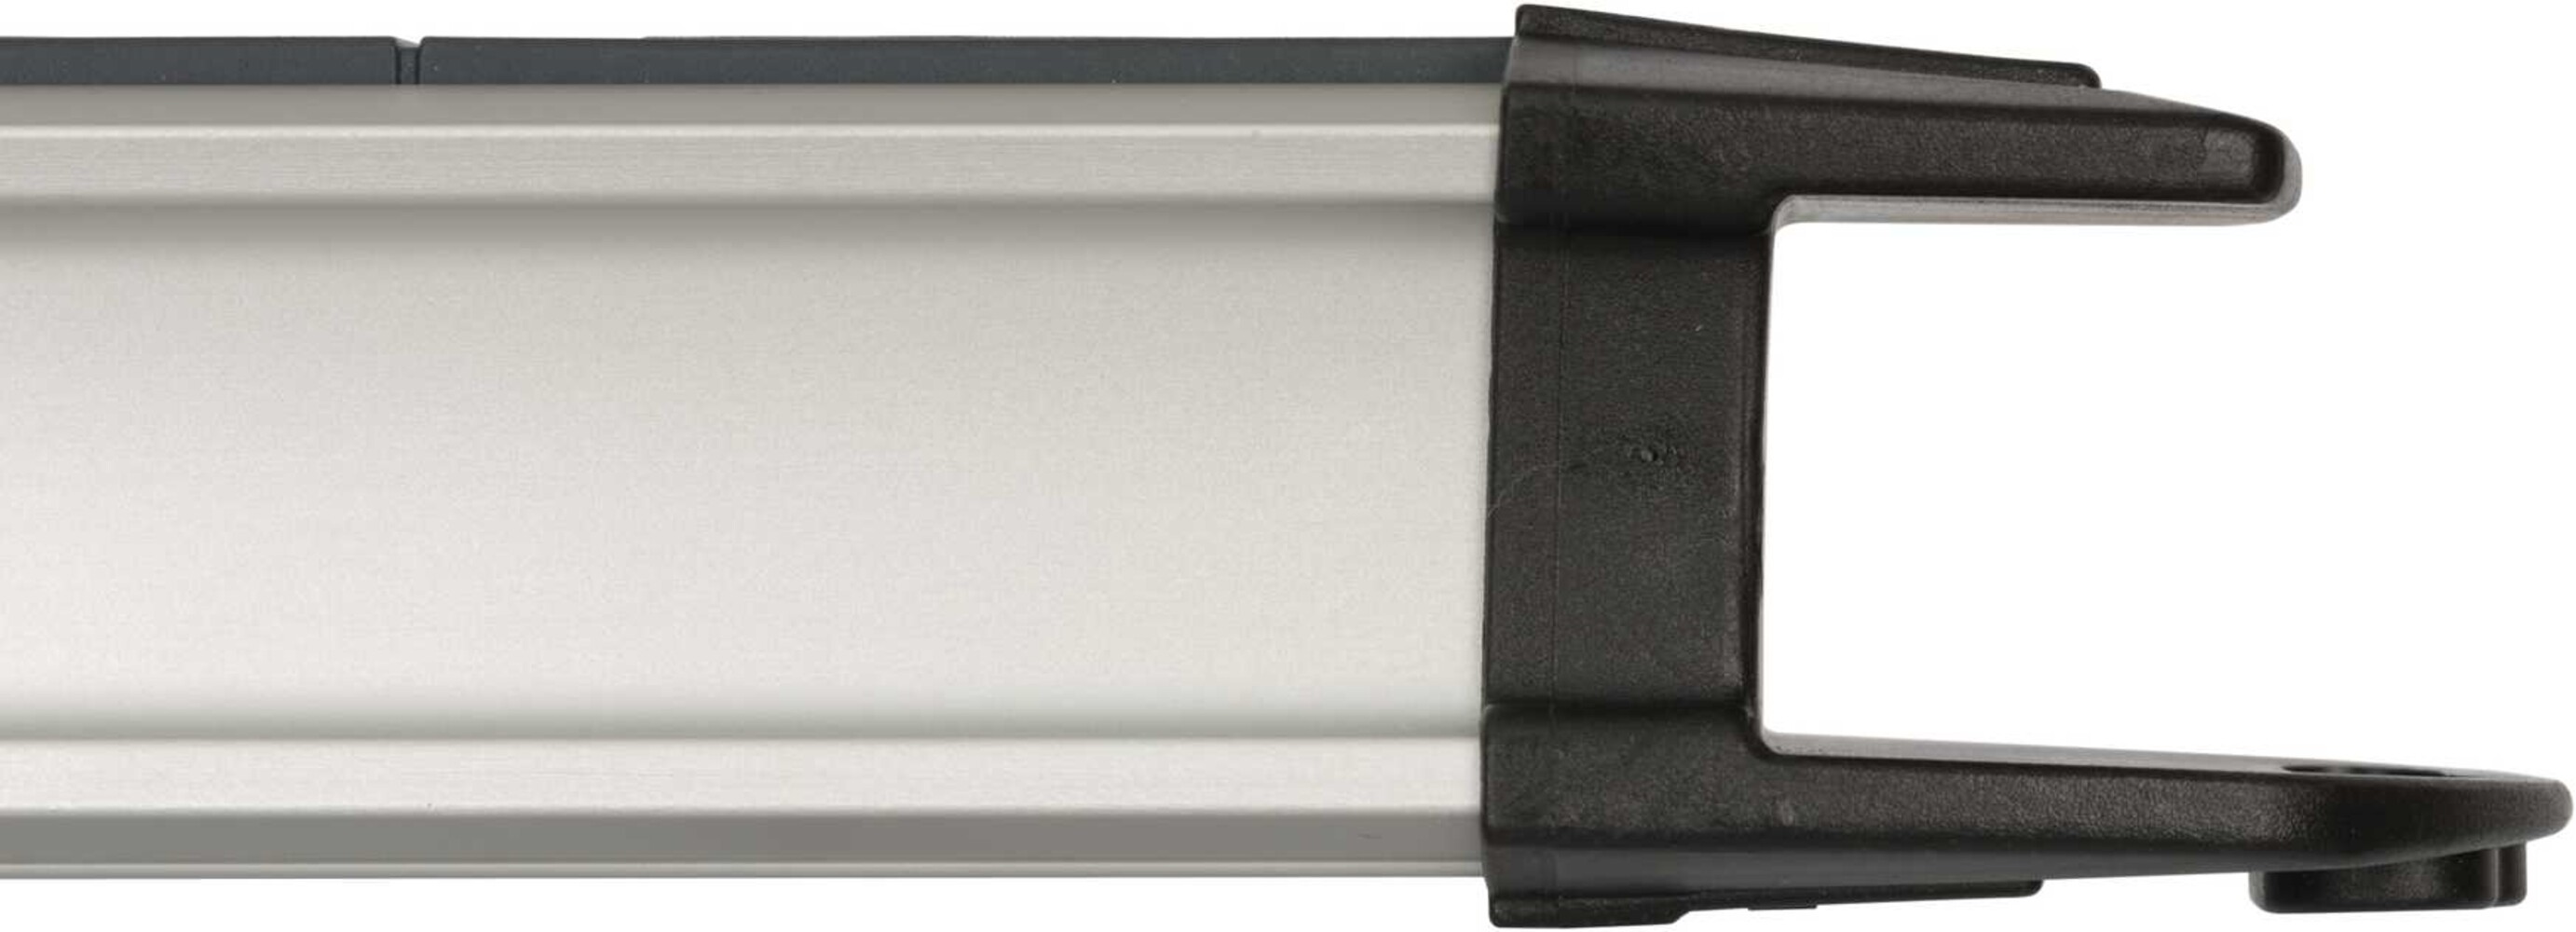 Hochwertige Premium Alu Line Steckdosenleiste von Brennenstuhl mit 12 Steckdosen, 2 Schaltern und 3m Kabel in der Farbe schwarz